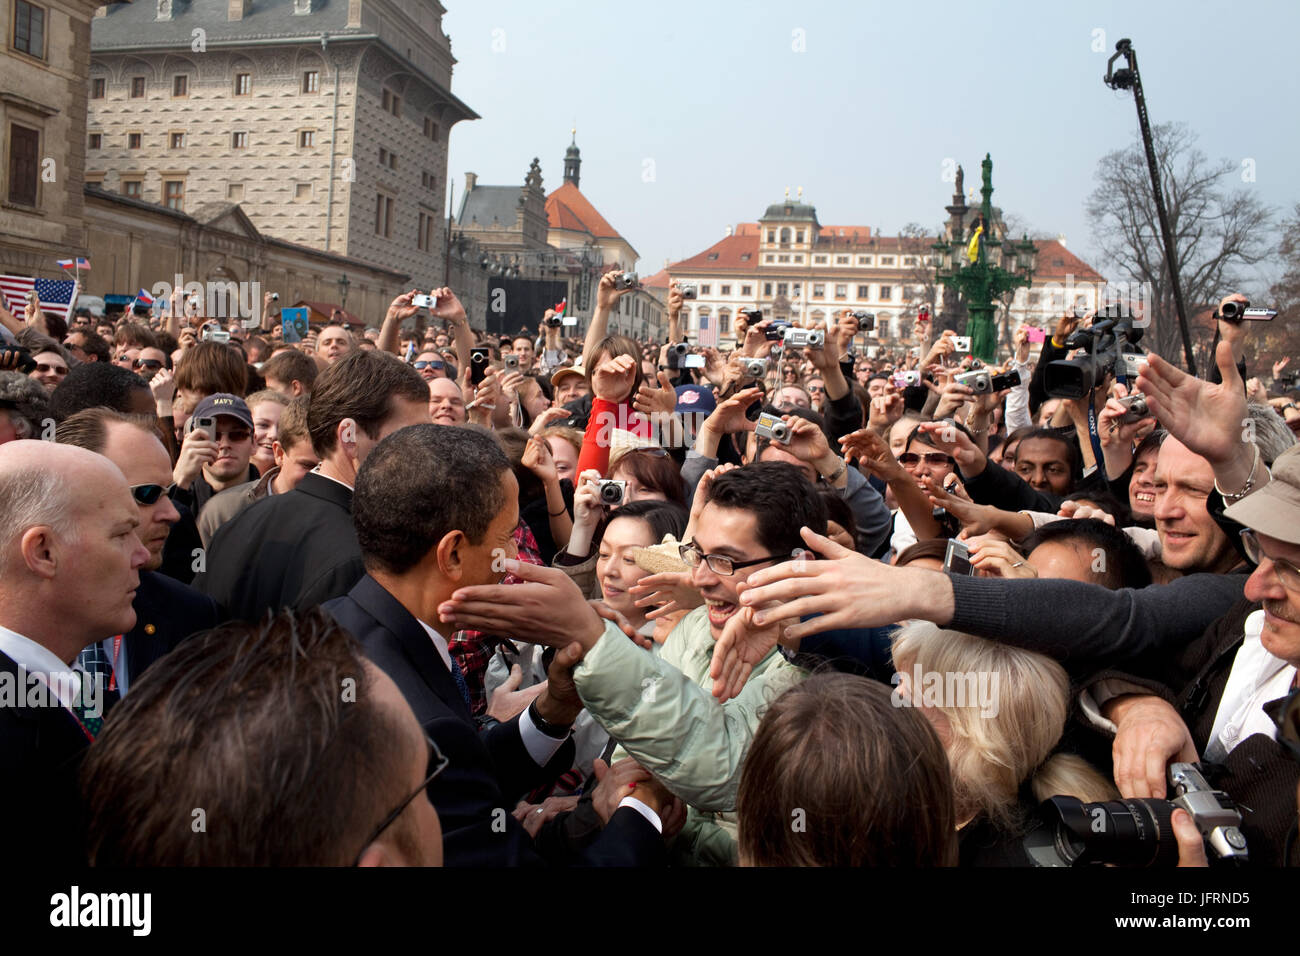 Le président Barack Obama est accueilli par une grande foule à la suite de son discours de Prague le 5 avril 2009, dans la place Hradcany à Prague, République tchèque. Photo Officiel de la Maison Blanche par Pete Souza Banque D'Images